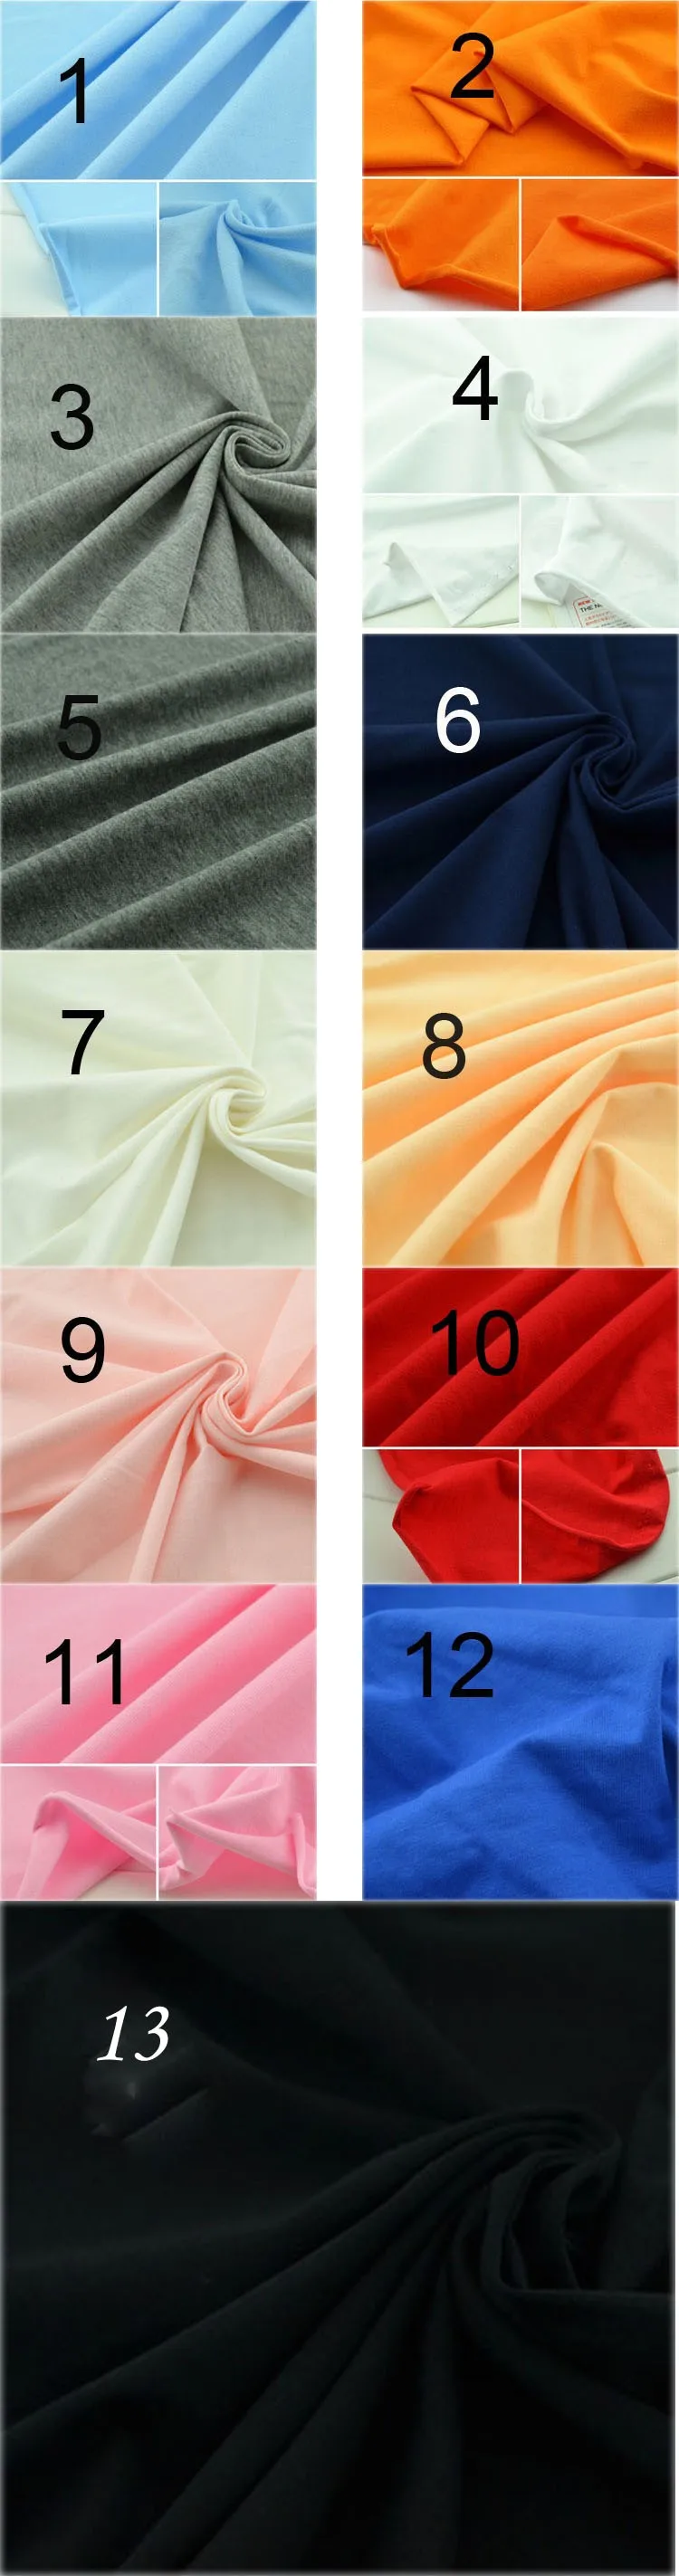 Рубашки высокого класса Ткань для Костюмы 1.65*0.9 м DIY Вышивание Ткань многоцветный хлопка вязать Ткань S с ножницы для портных